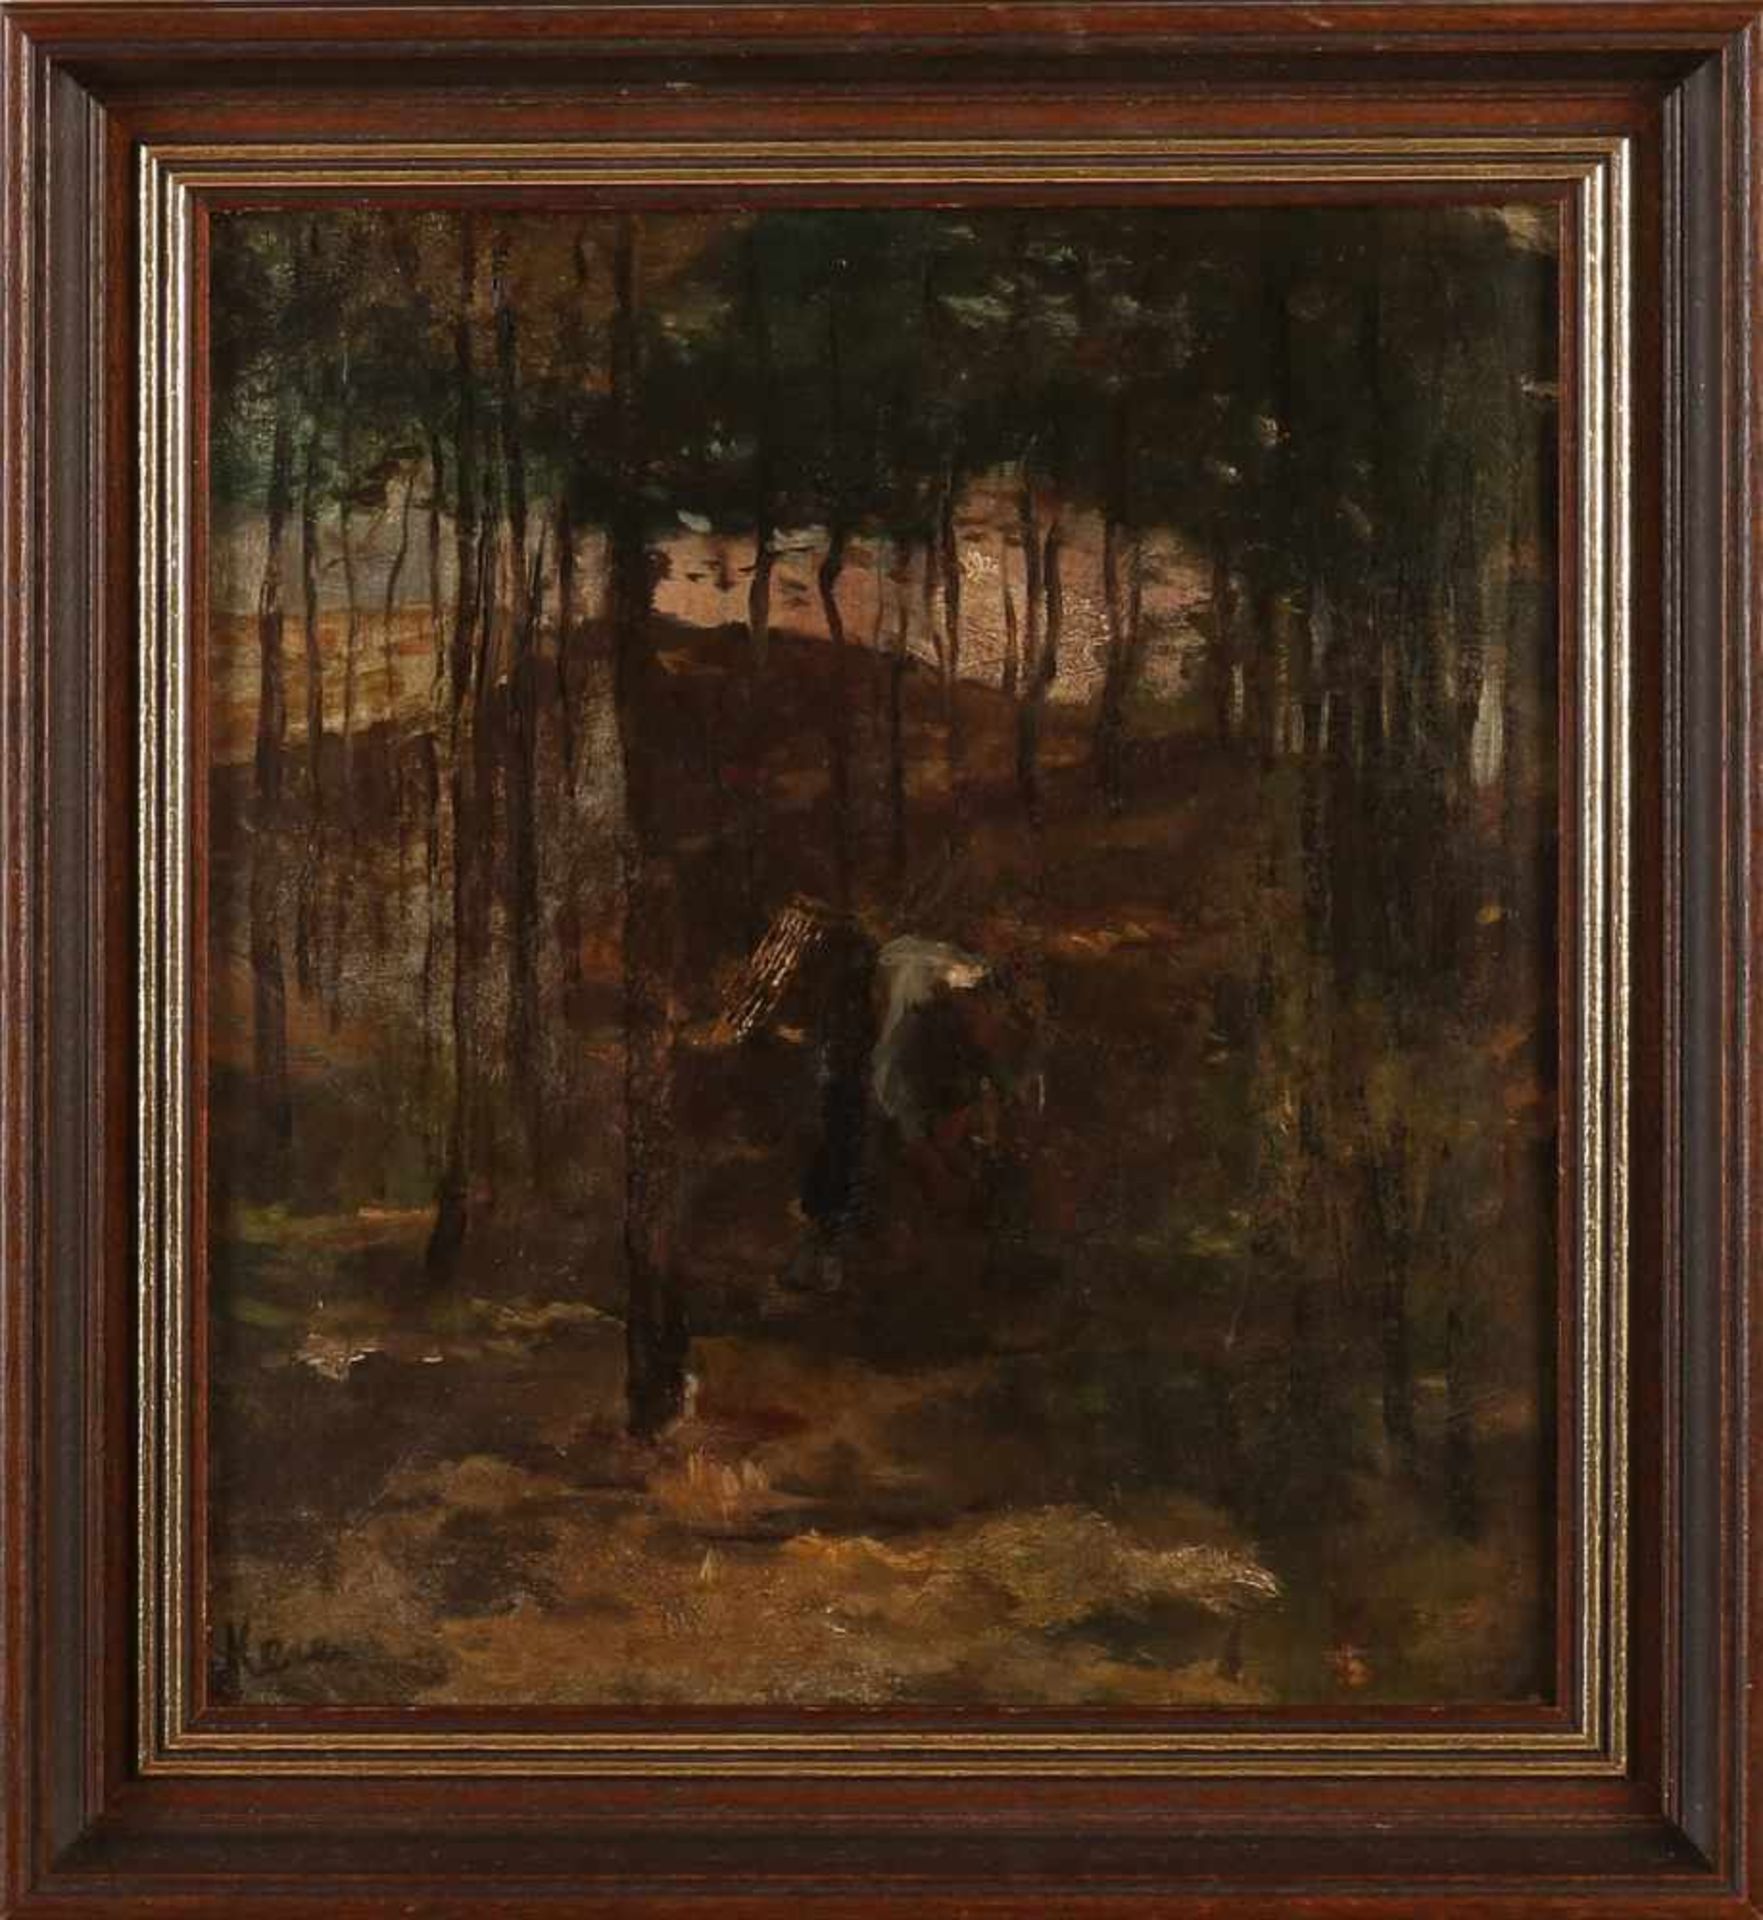 Hein Kever. 1854 - 1922. Farmer seeks deadwood. Oil on linen. Marouflé. Size: 33 x H, B 29 cm. In